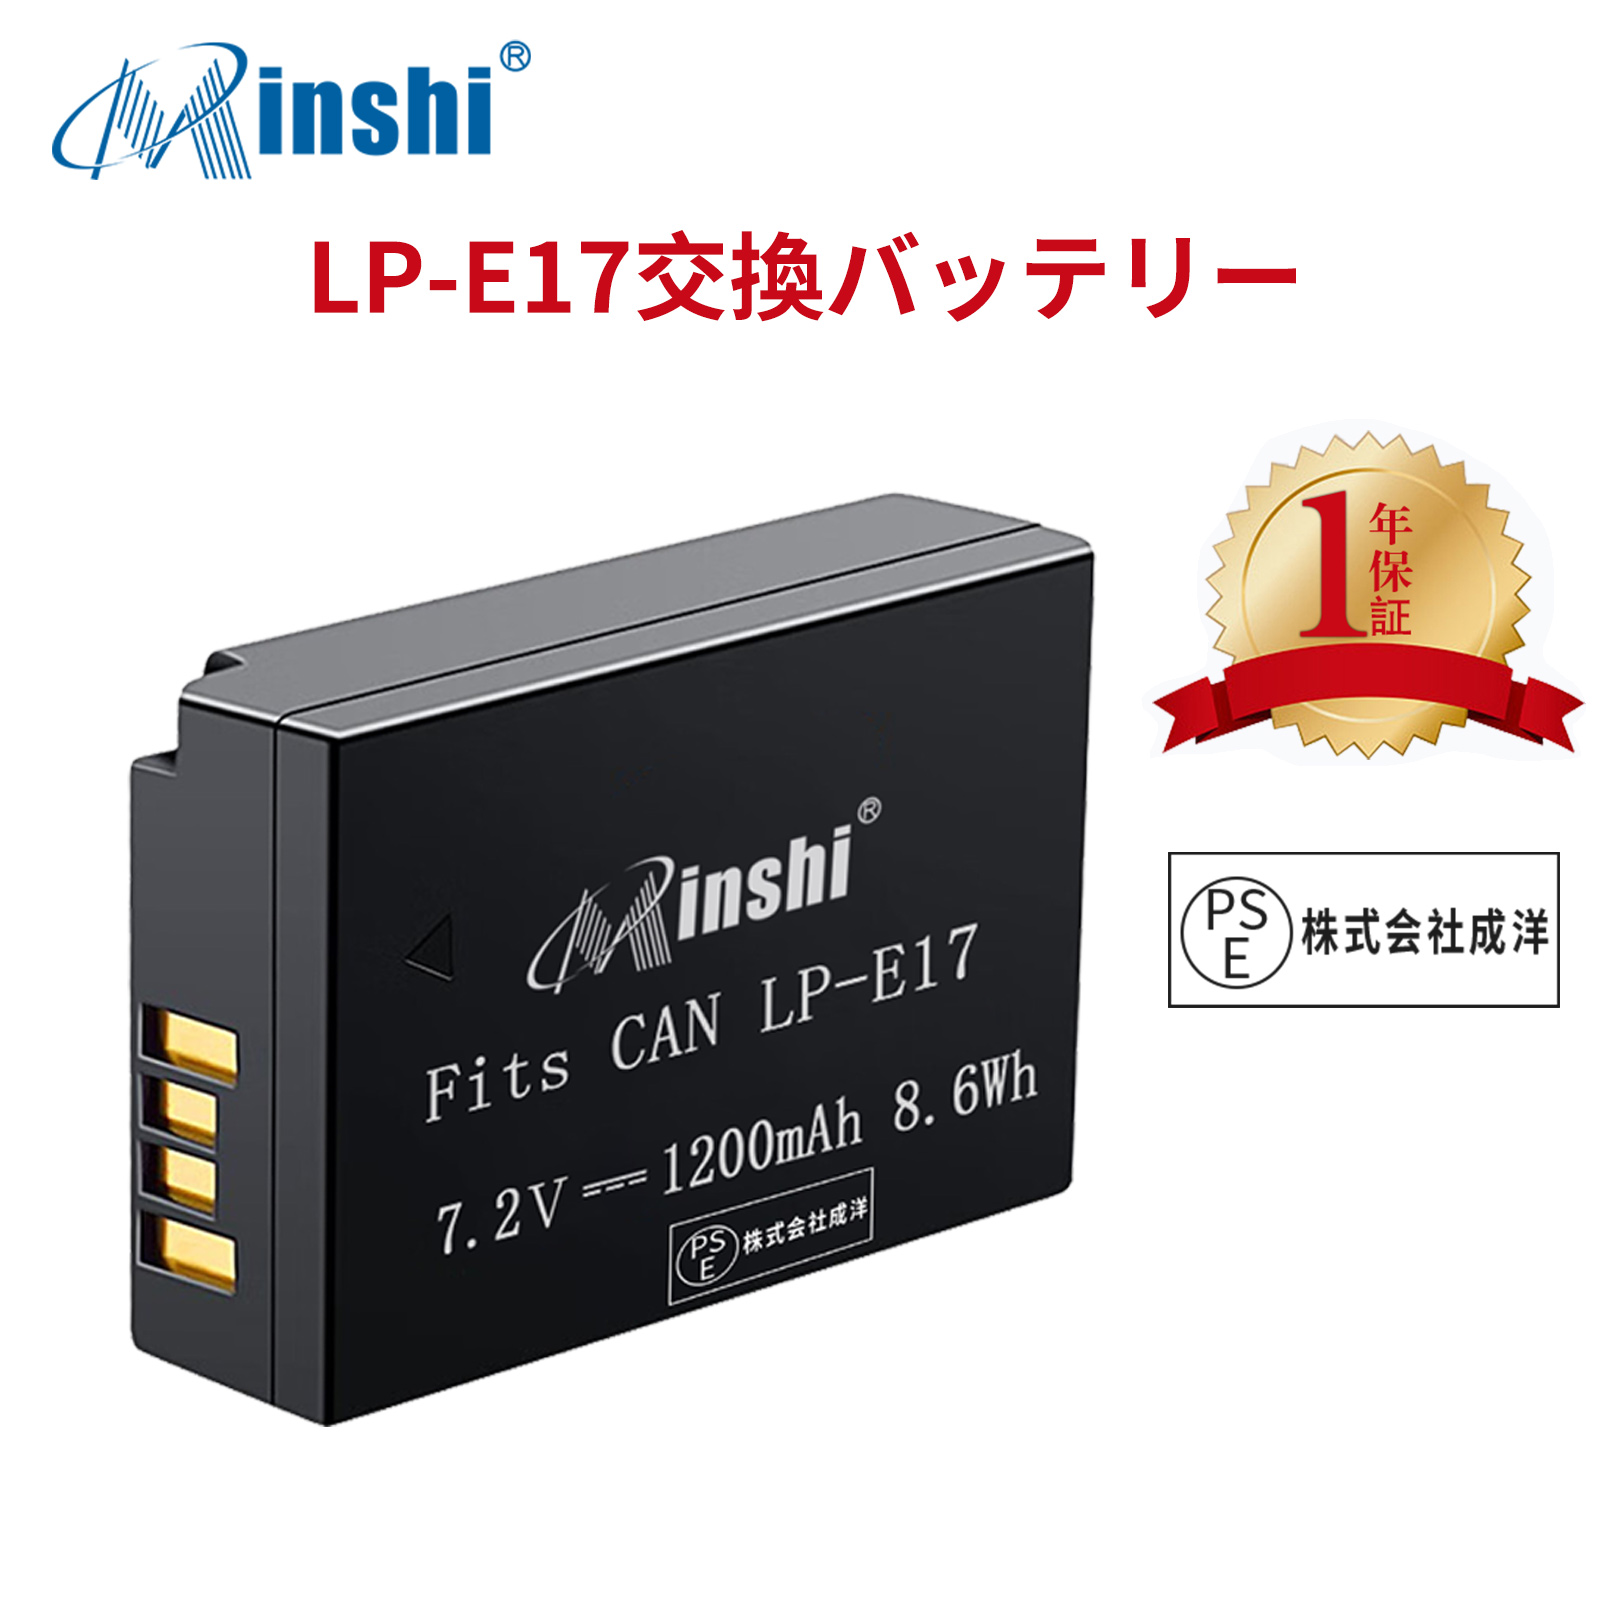 【1年保証】minshi CANON Rebel T6i 【1200mAh 7.2V】PSE認定済 高品質 LP-E17 交換用バッテリー オリジナル充電器との互換性がない